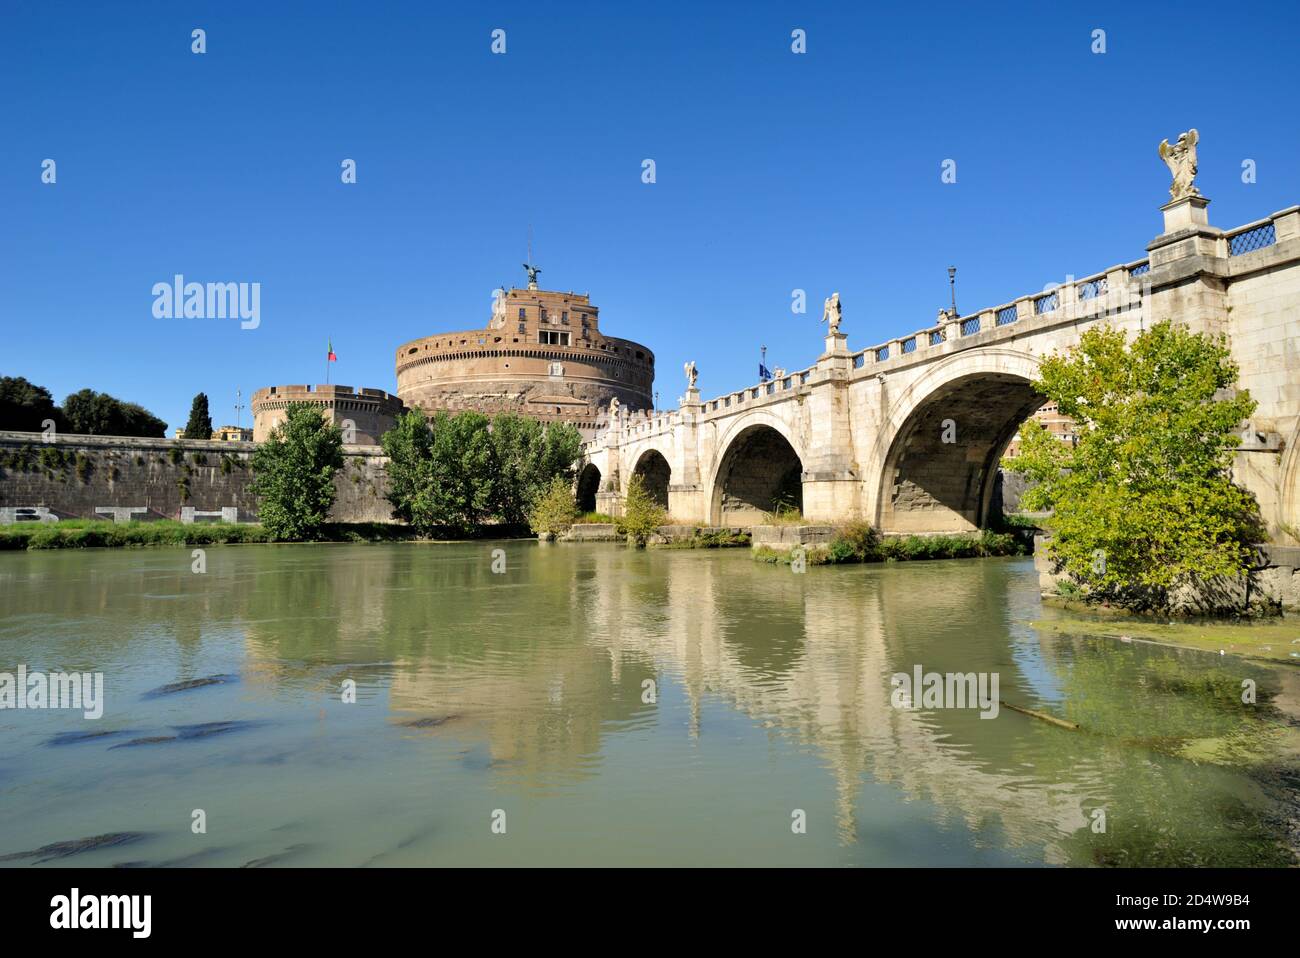 Italy, Rome, Castel Sant'Angelo Stock Photo